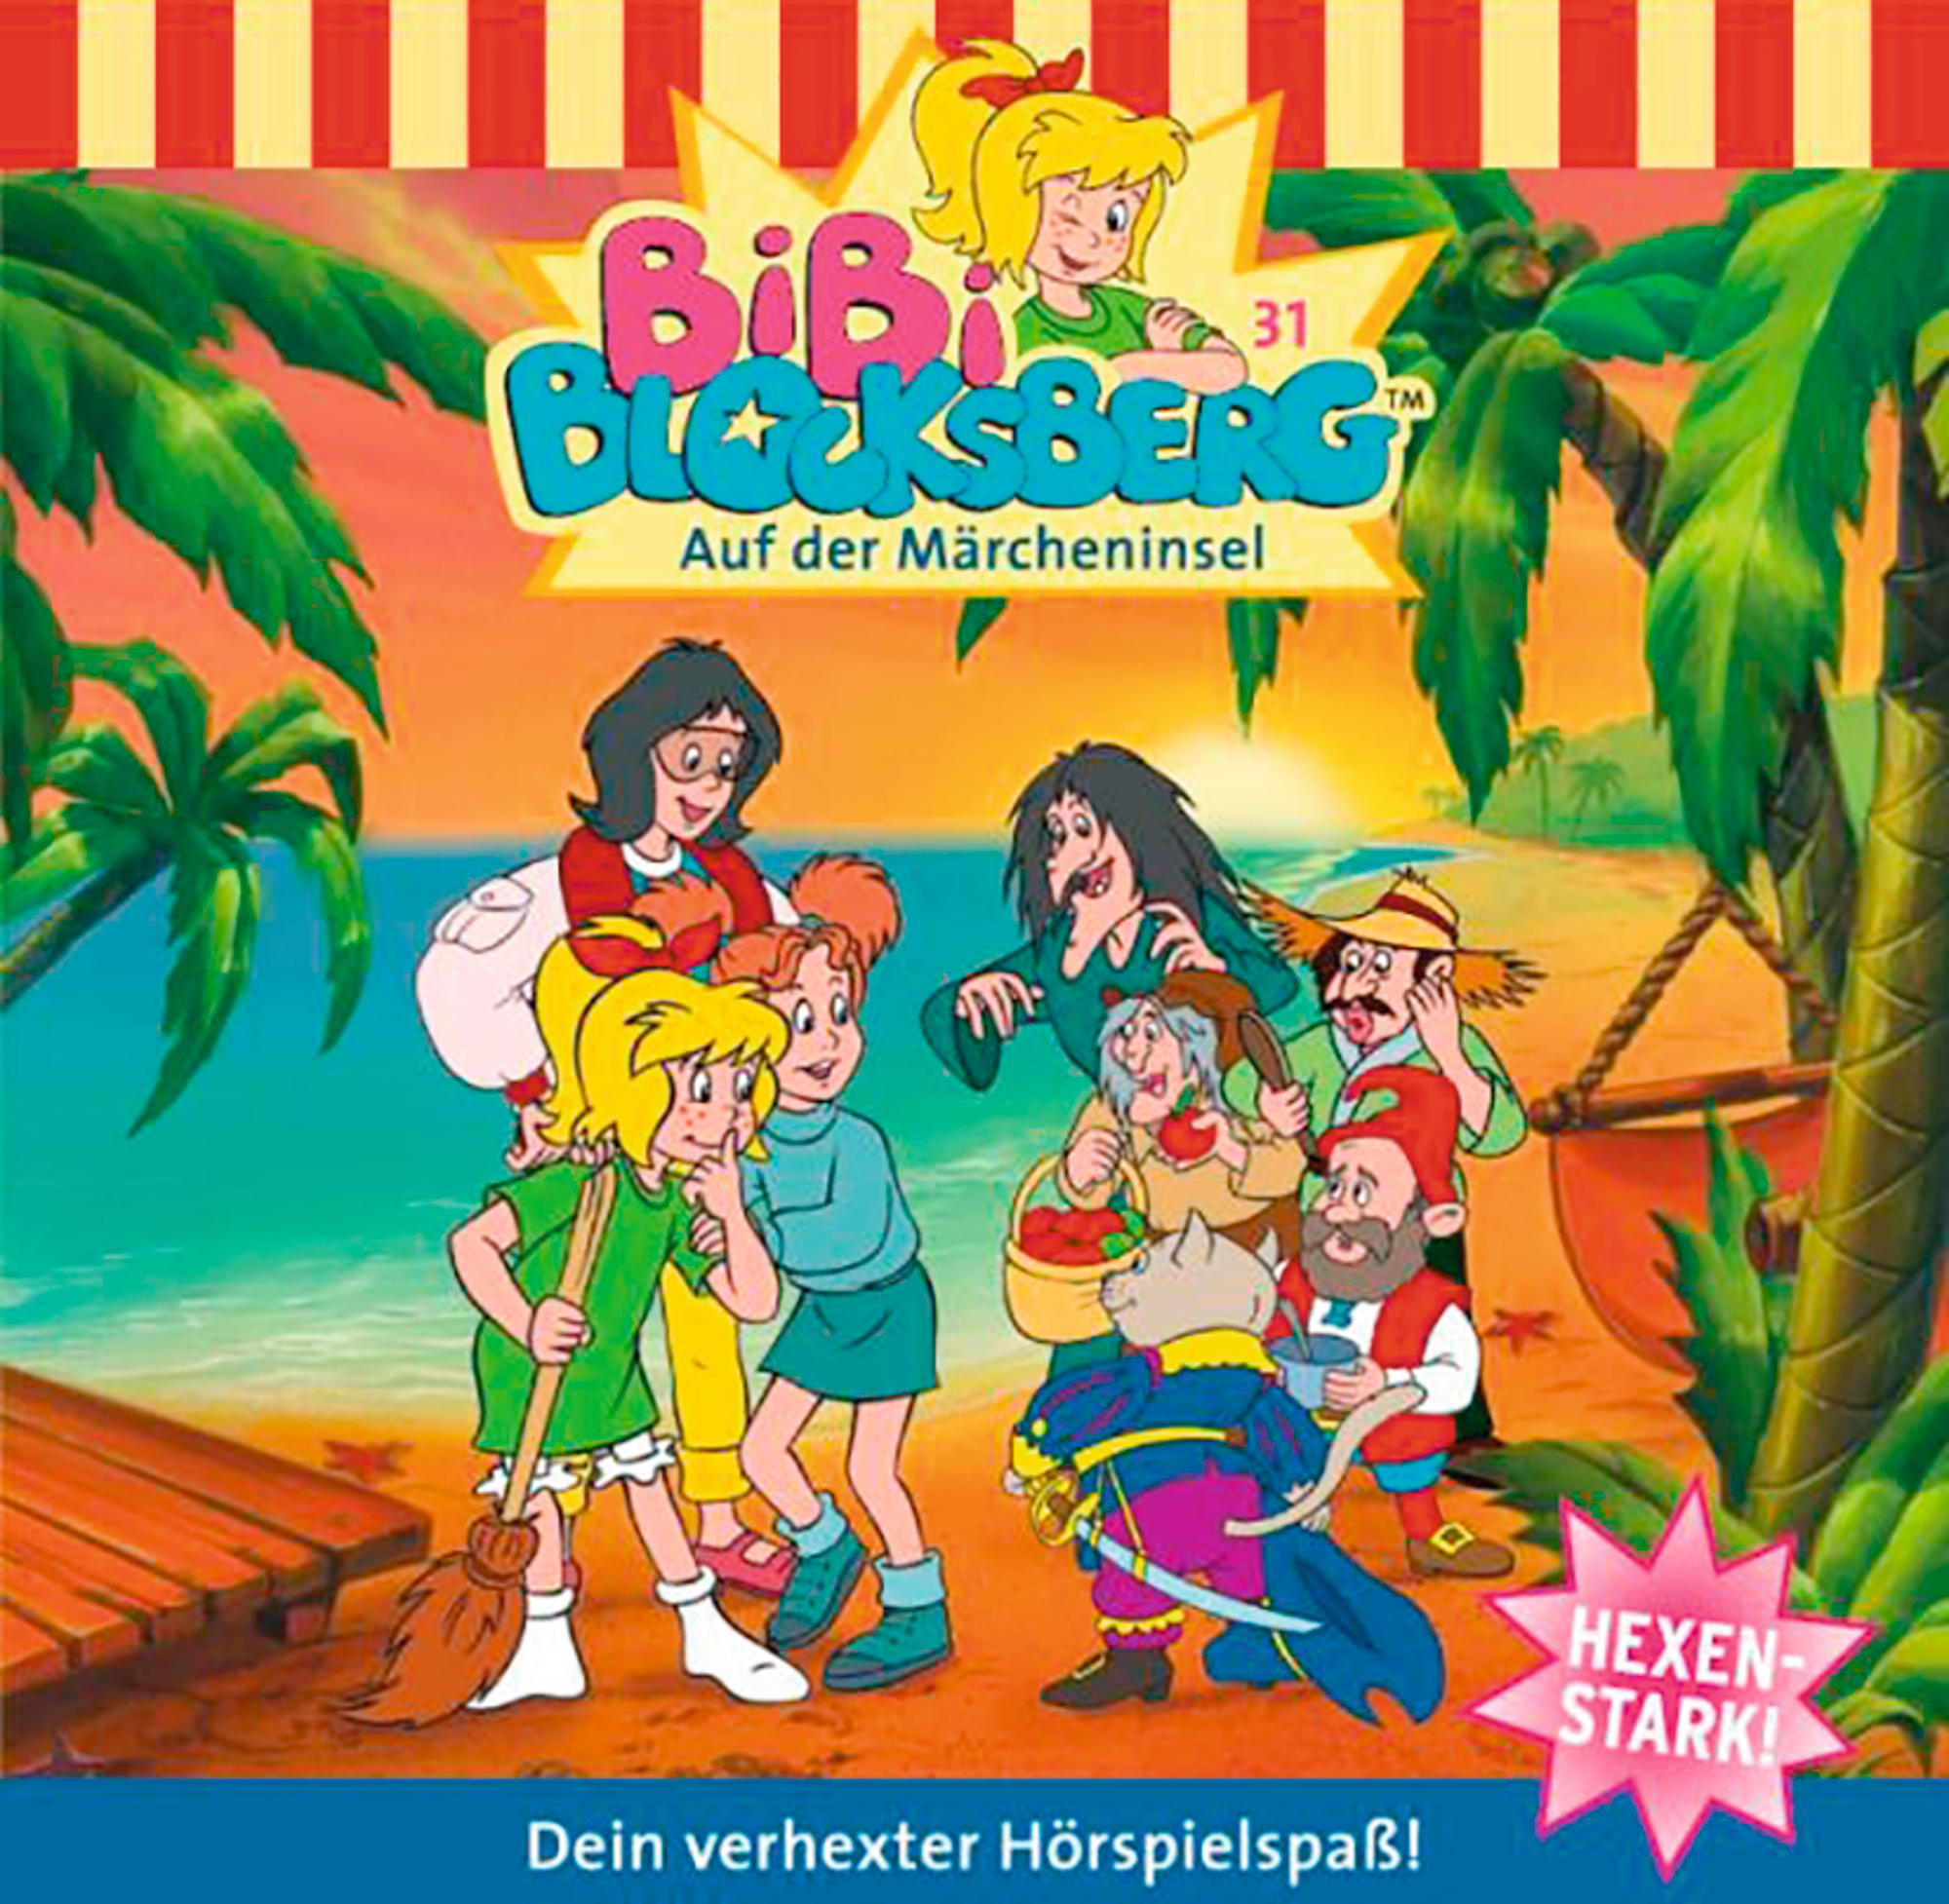 Auf Märcheninsel Der (CD) - 031: Folge